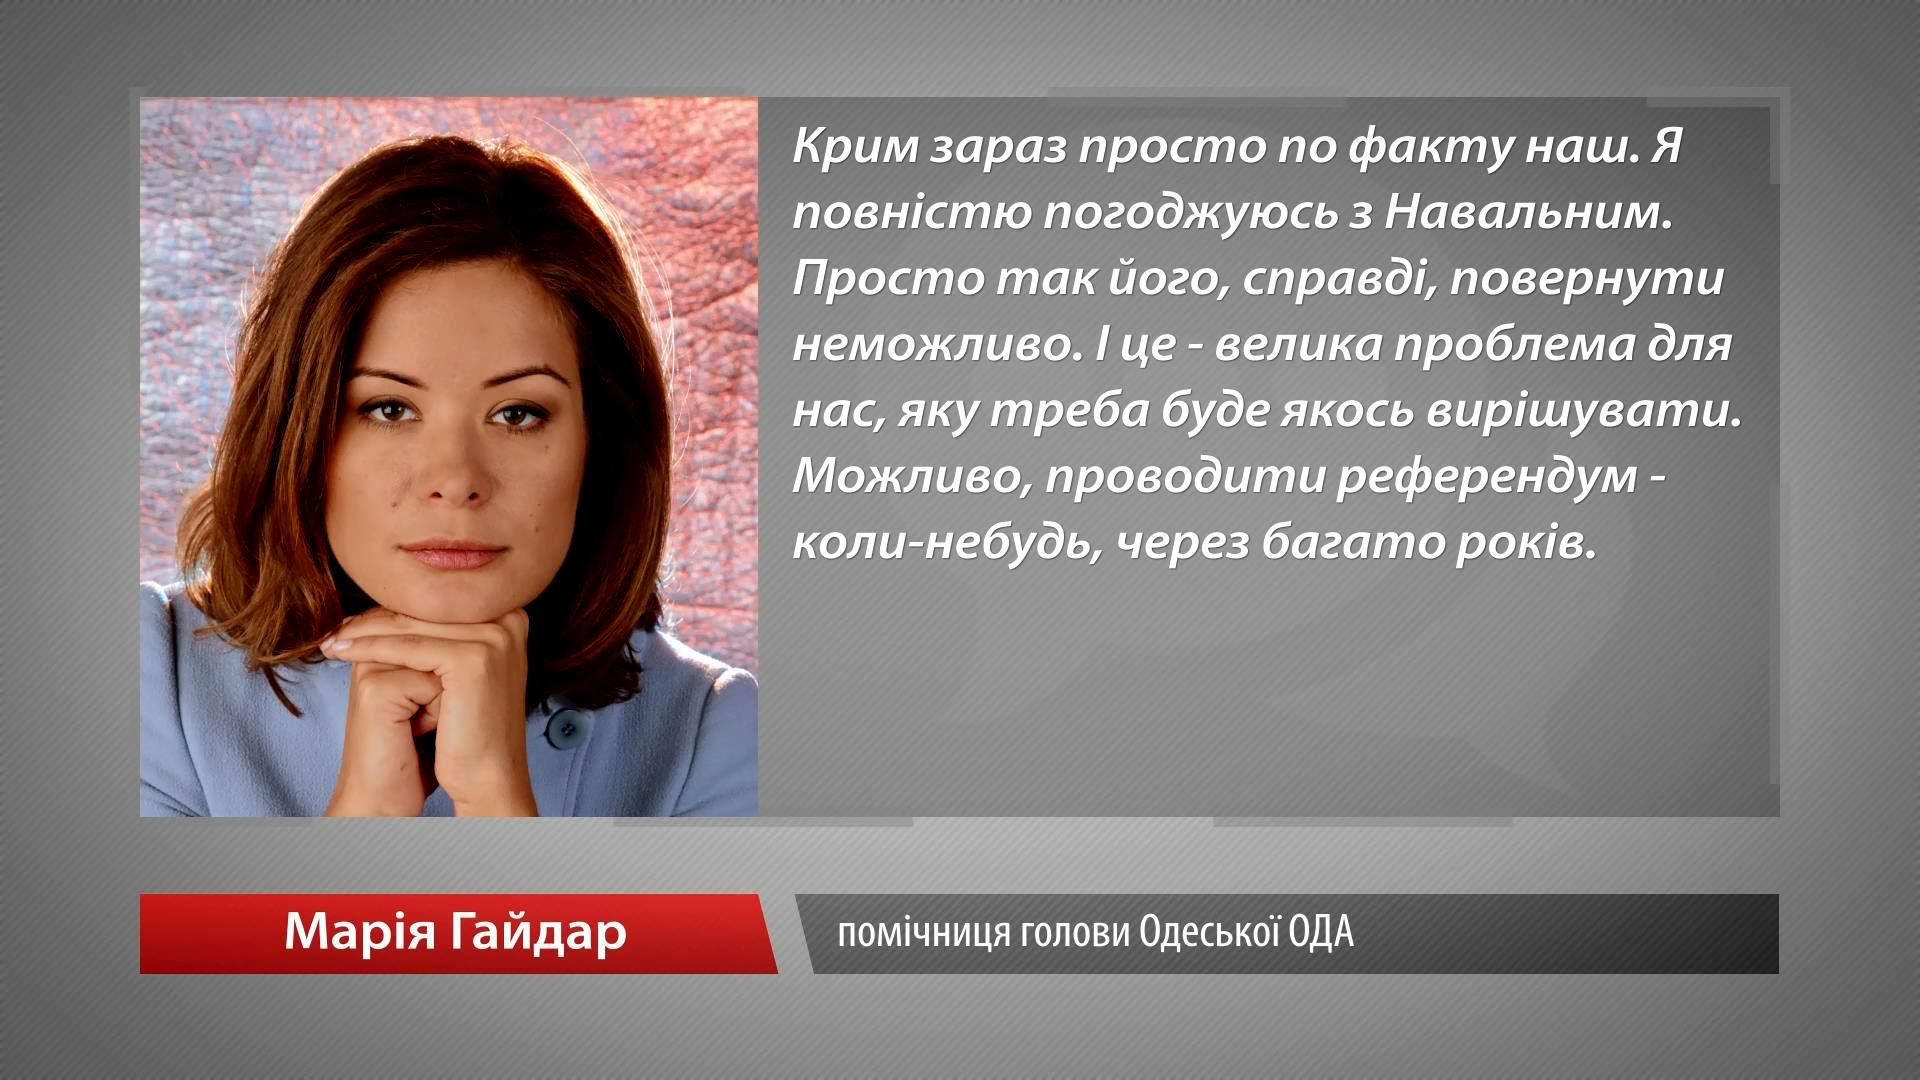 Марии Гайдар пришлось оправдываться за "Крым наш"